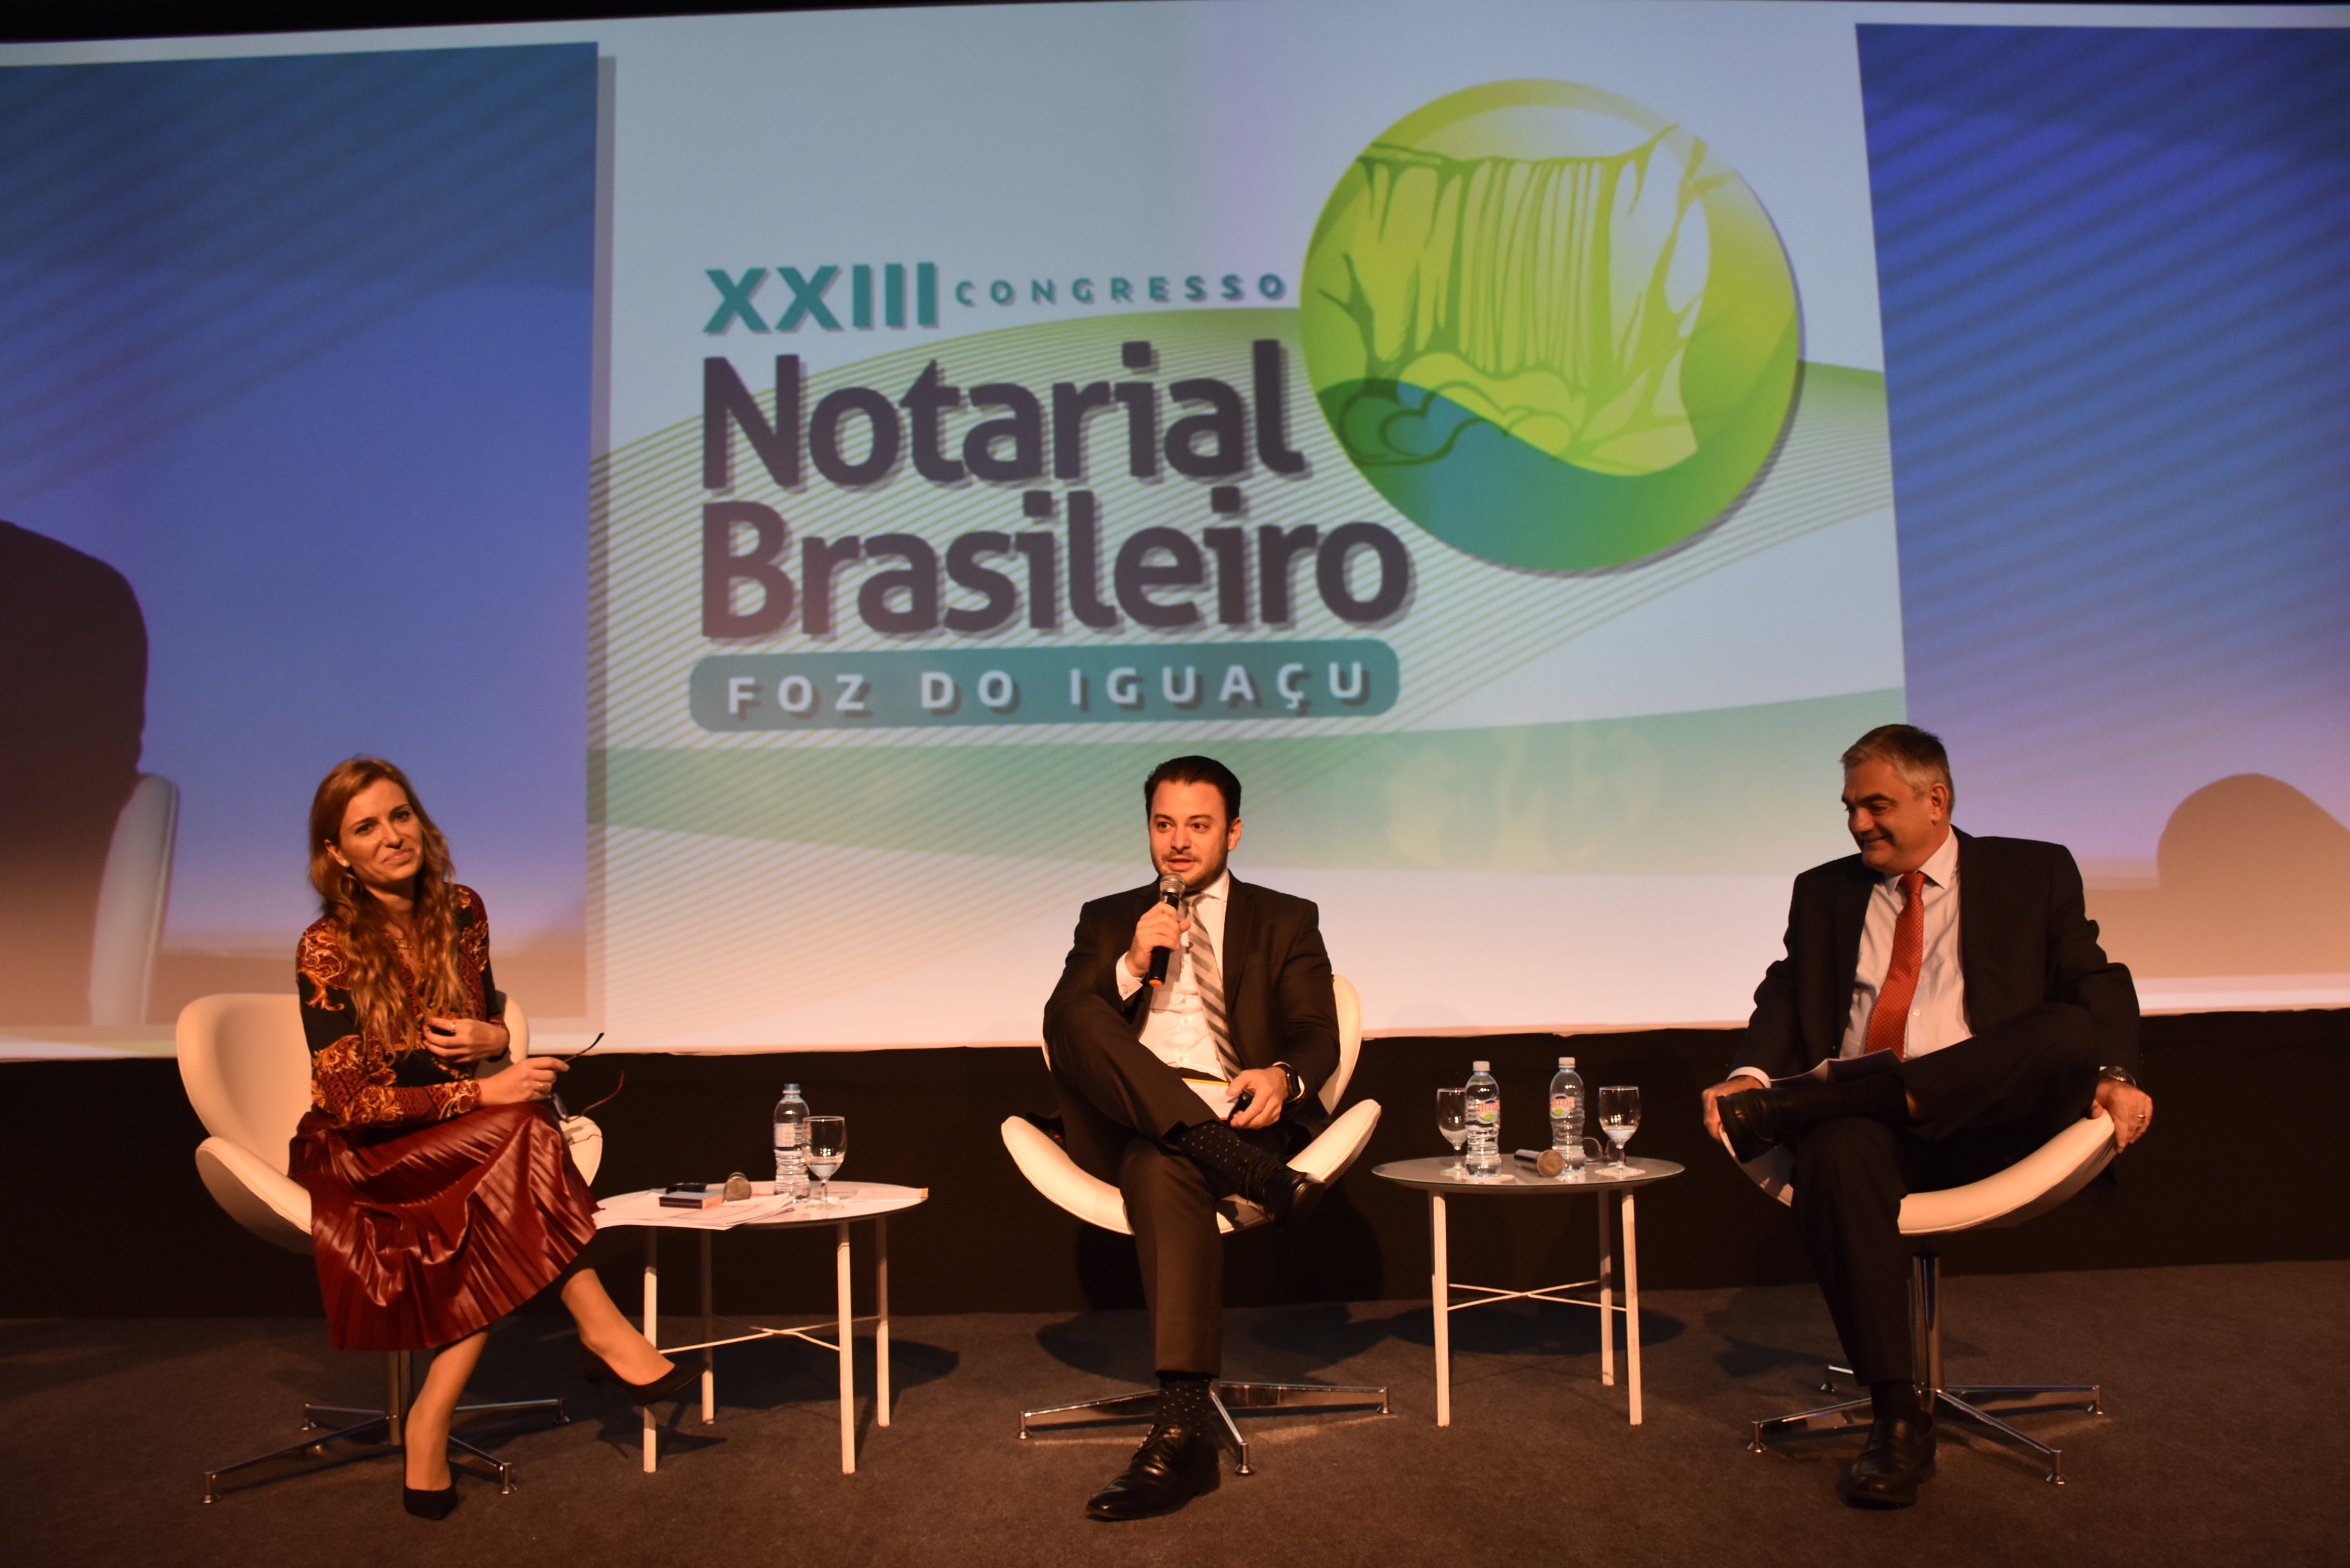 XXIII Congresso Notarial Brasileiro: Palestra Sobre A Diretiva Antecipada